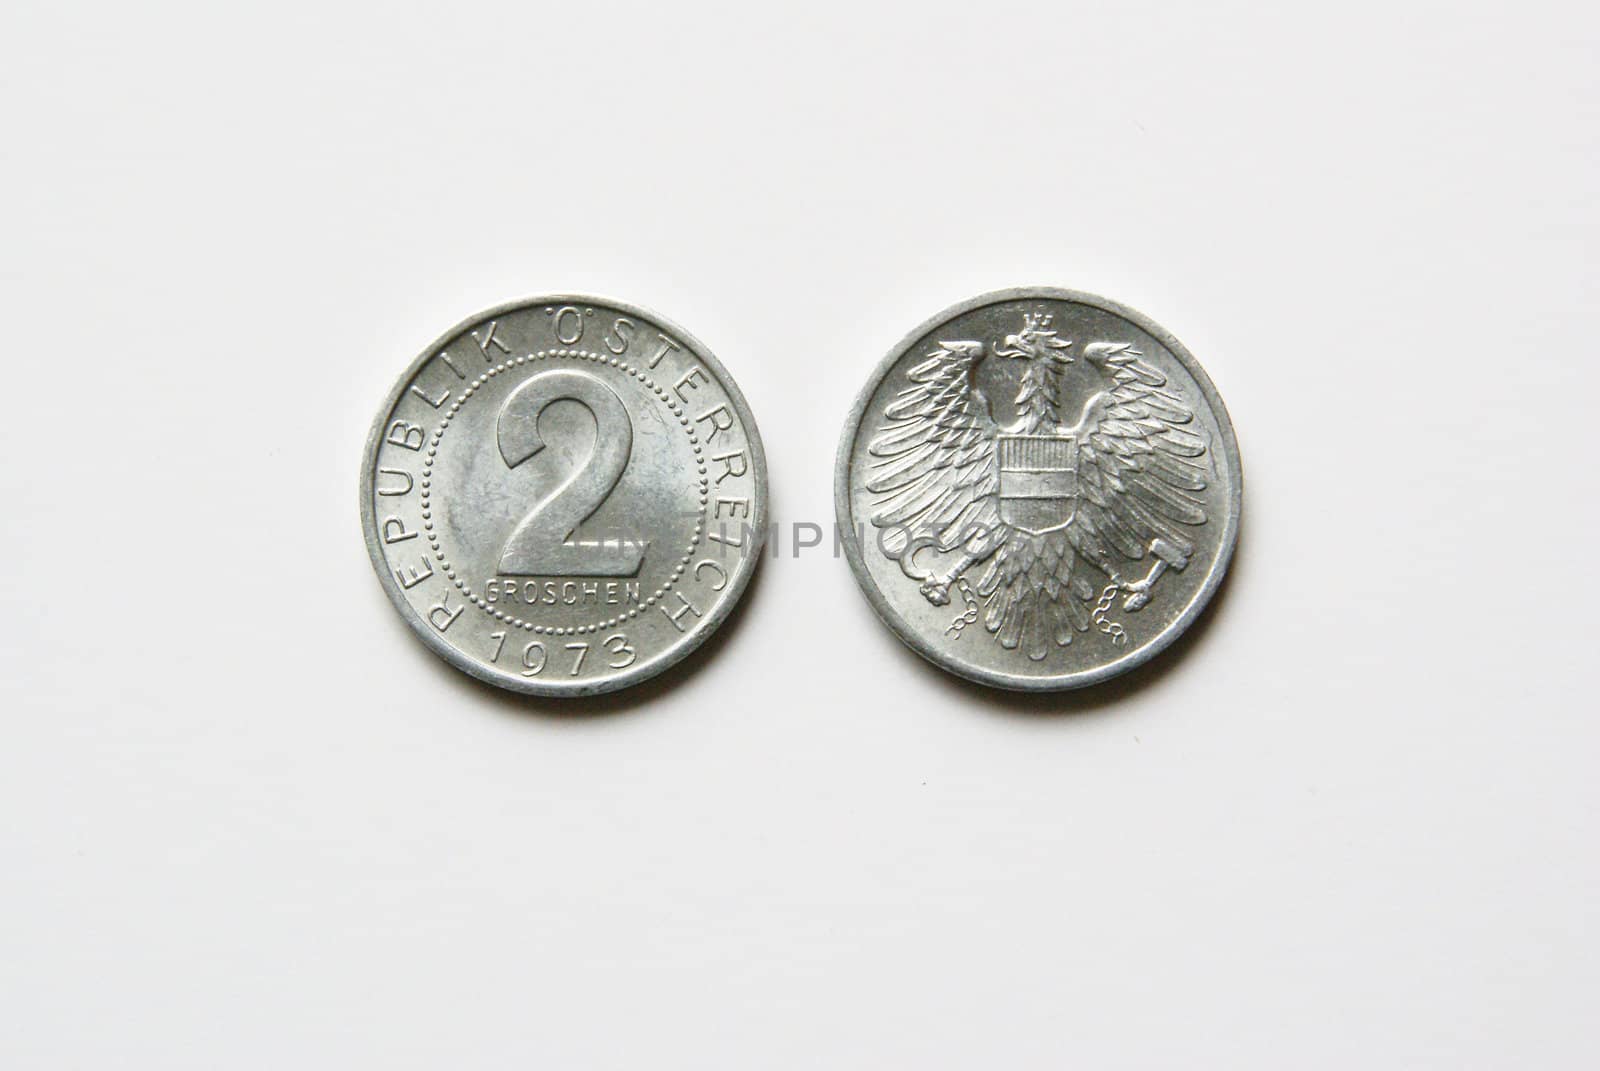 Austrian 2 Groschen coins by calexica